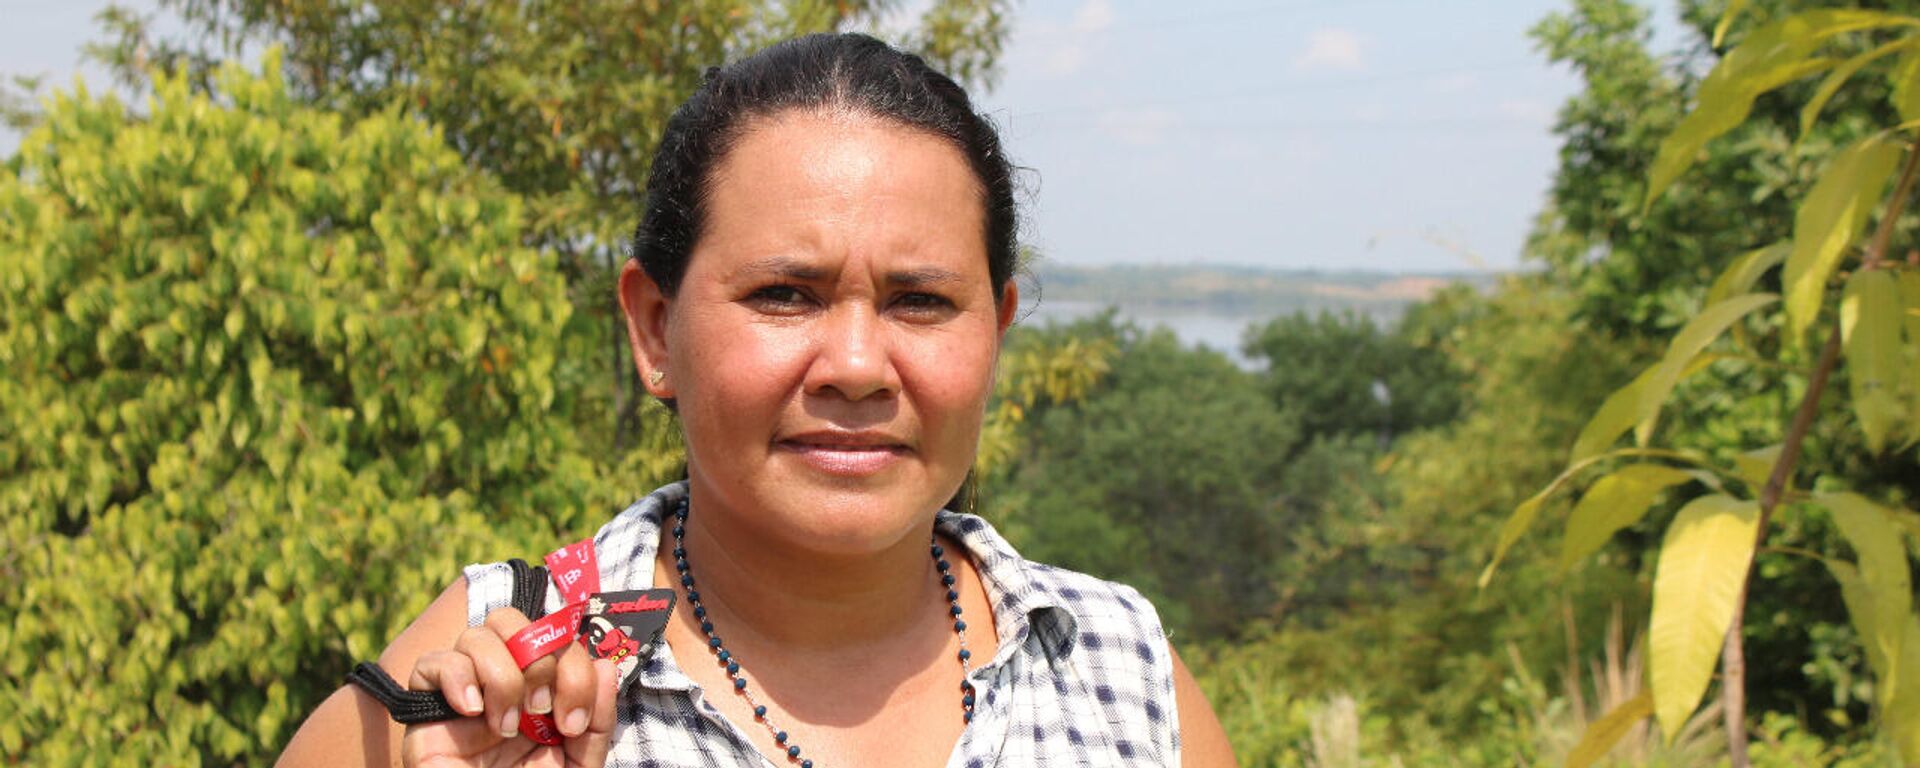 Yuli Velásquez es pescadora artesanal y líder ambiental en la Ciénaga de San Silvestre - Sputnik Mundo, 1920, 18.02.2021